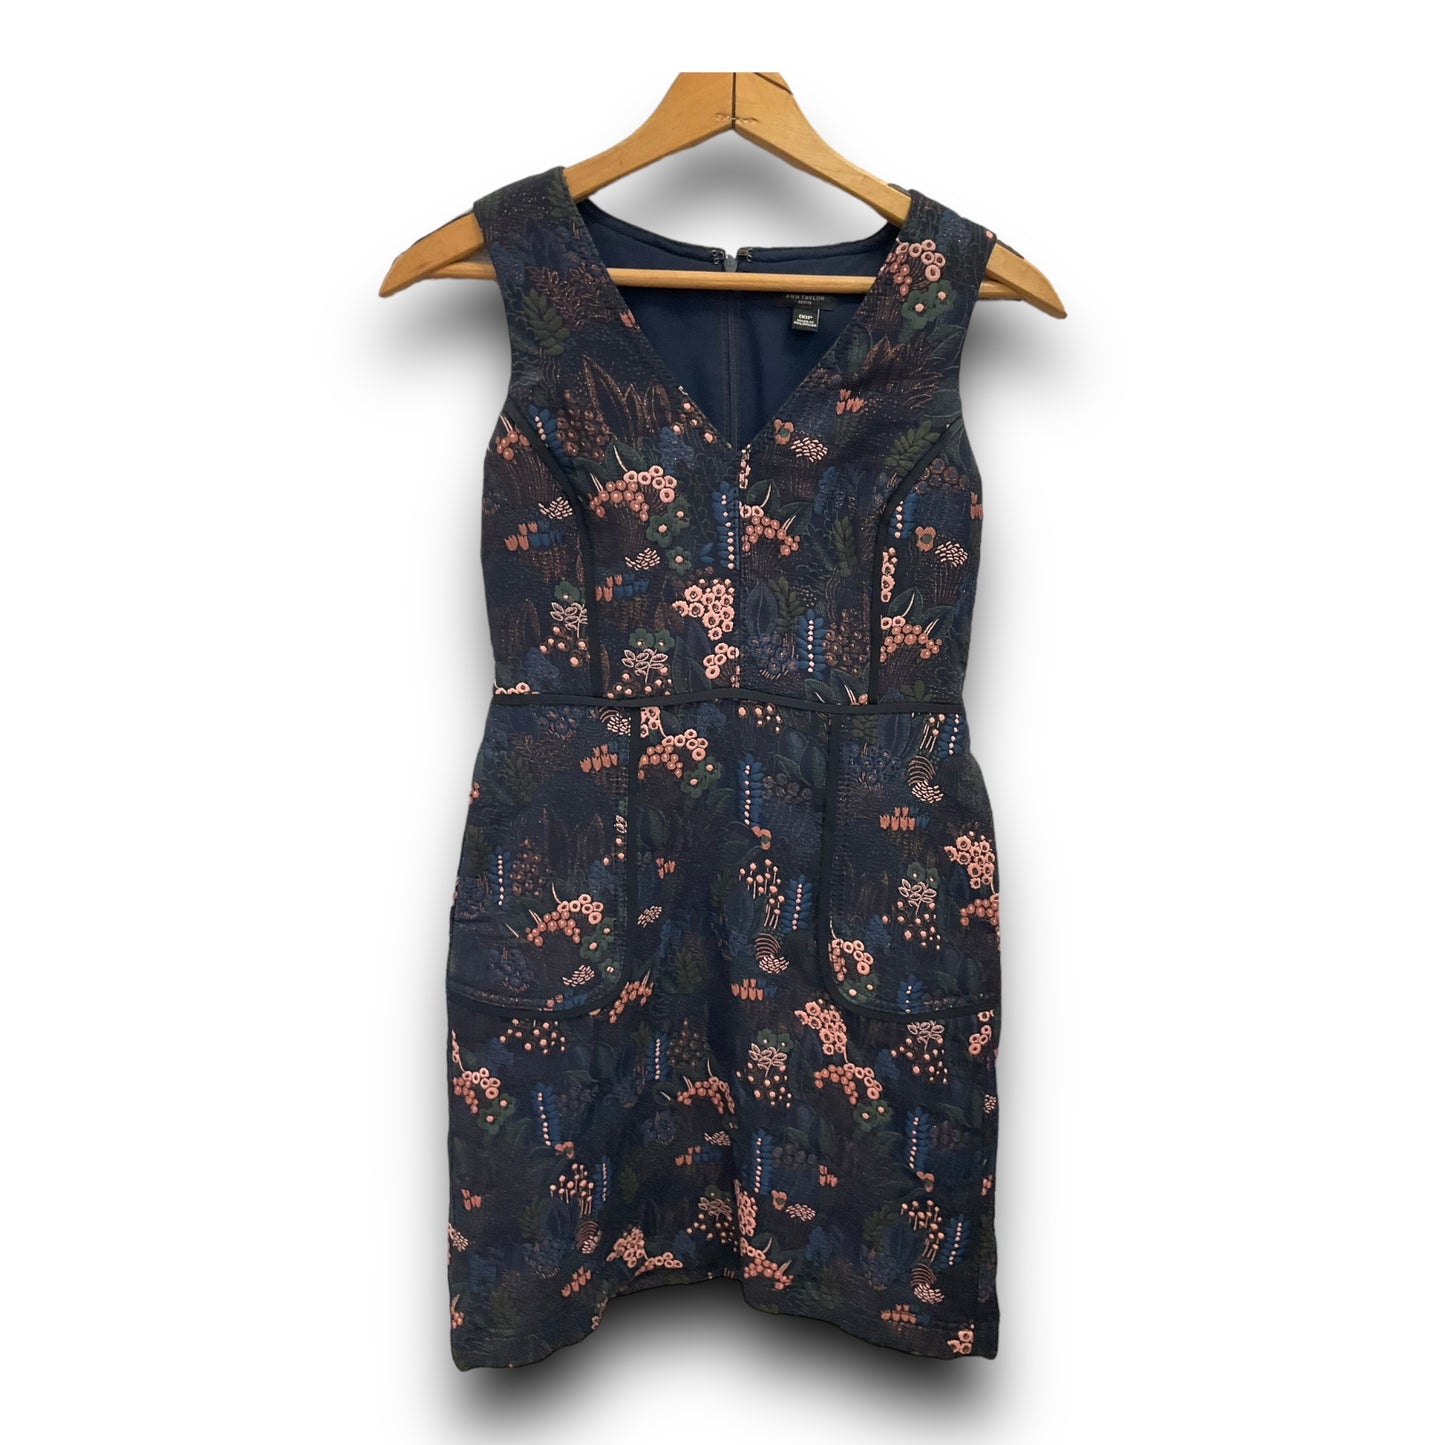 Dress Casual Midi By Ann Taylor  Size: Petite   Xs